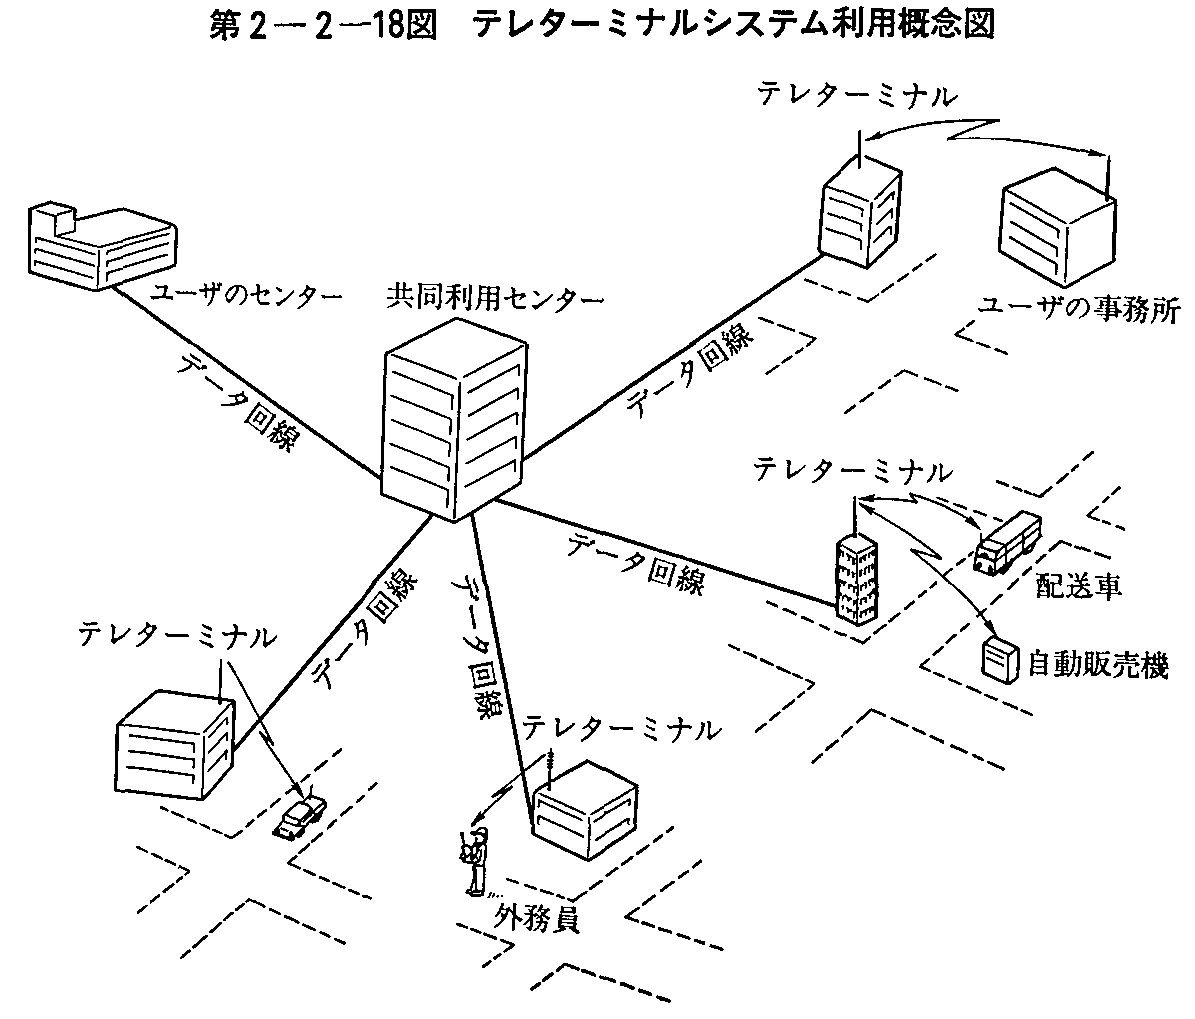 第2-2-18図 テレターミナルシステム利用概念図